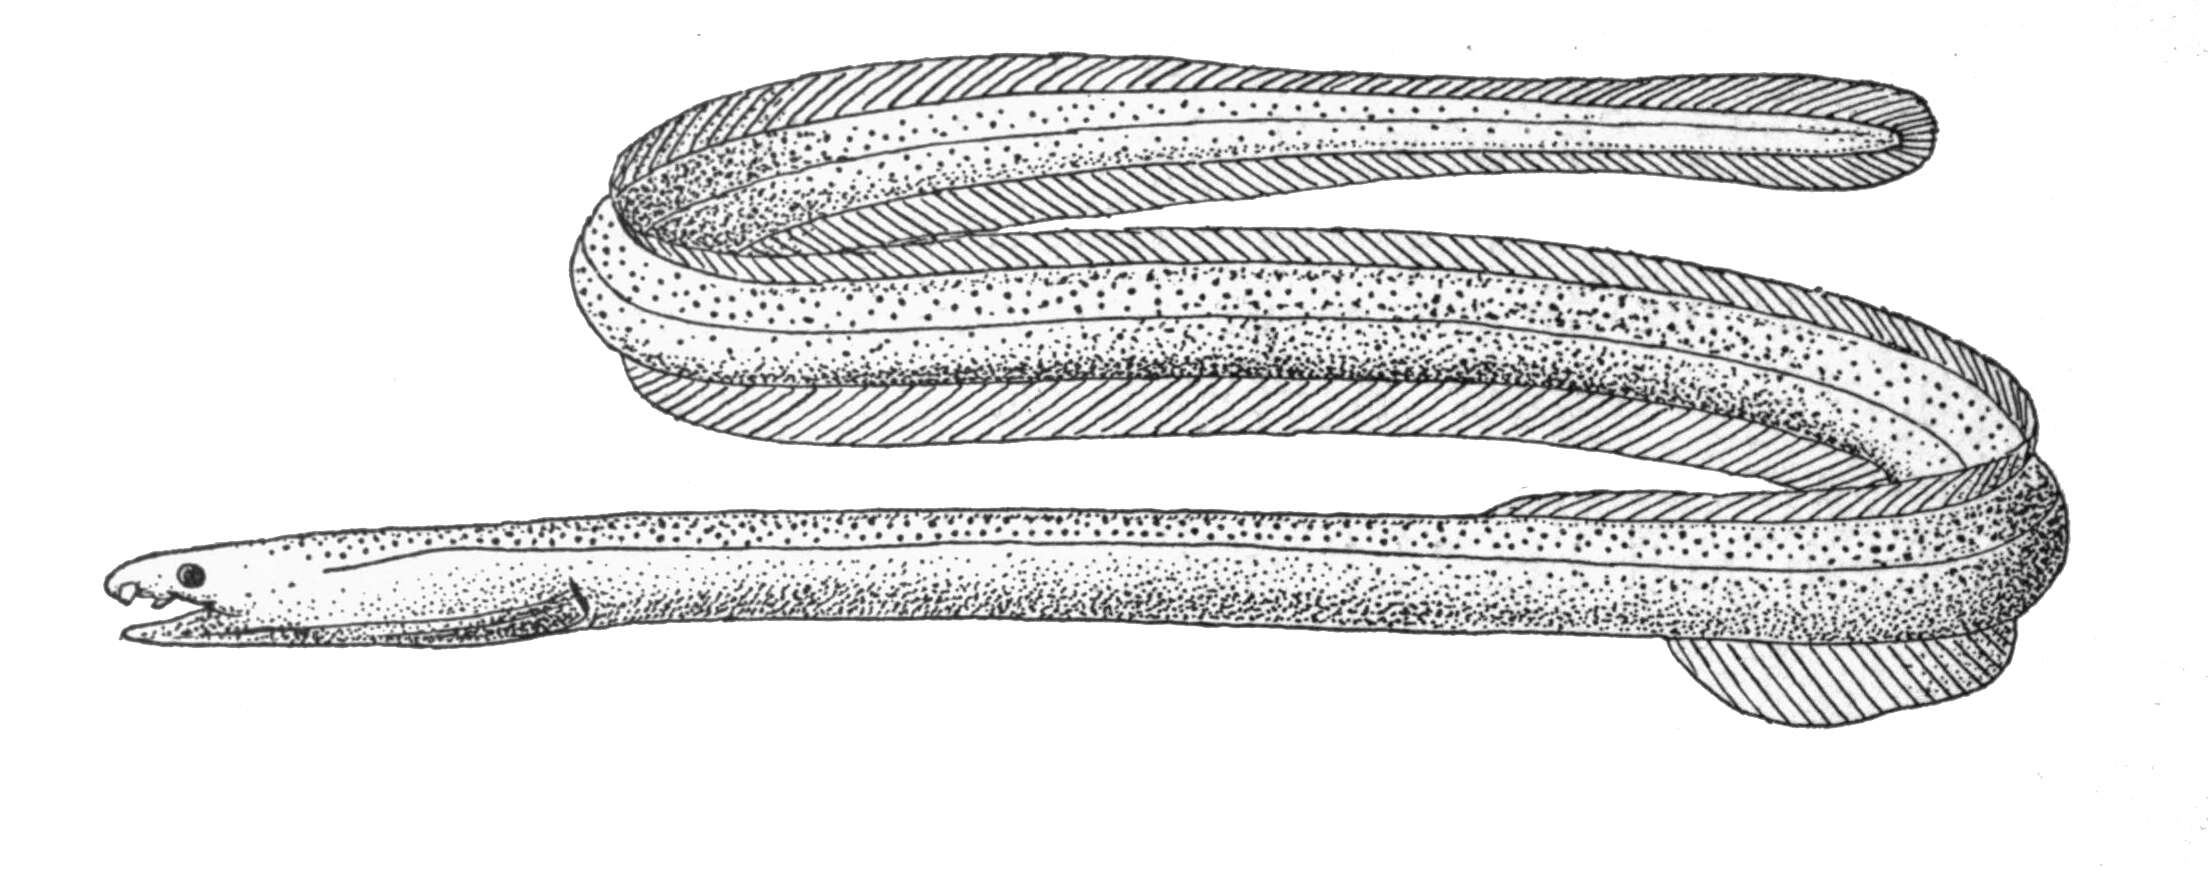 Image of Muraenichthys gymnopterus (Bleeker 1853)